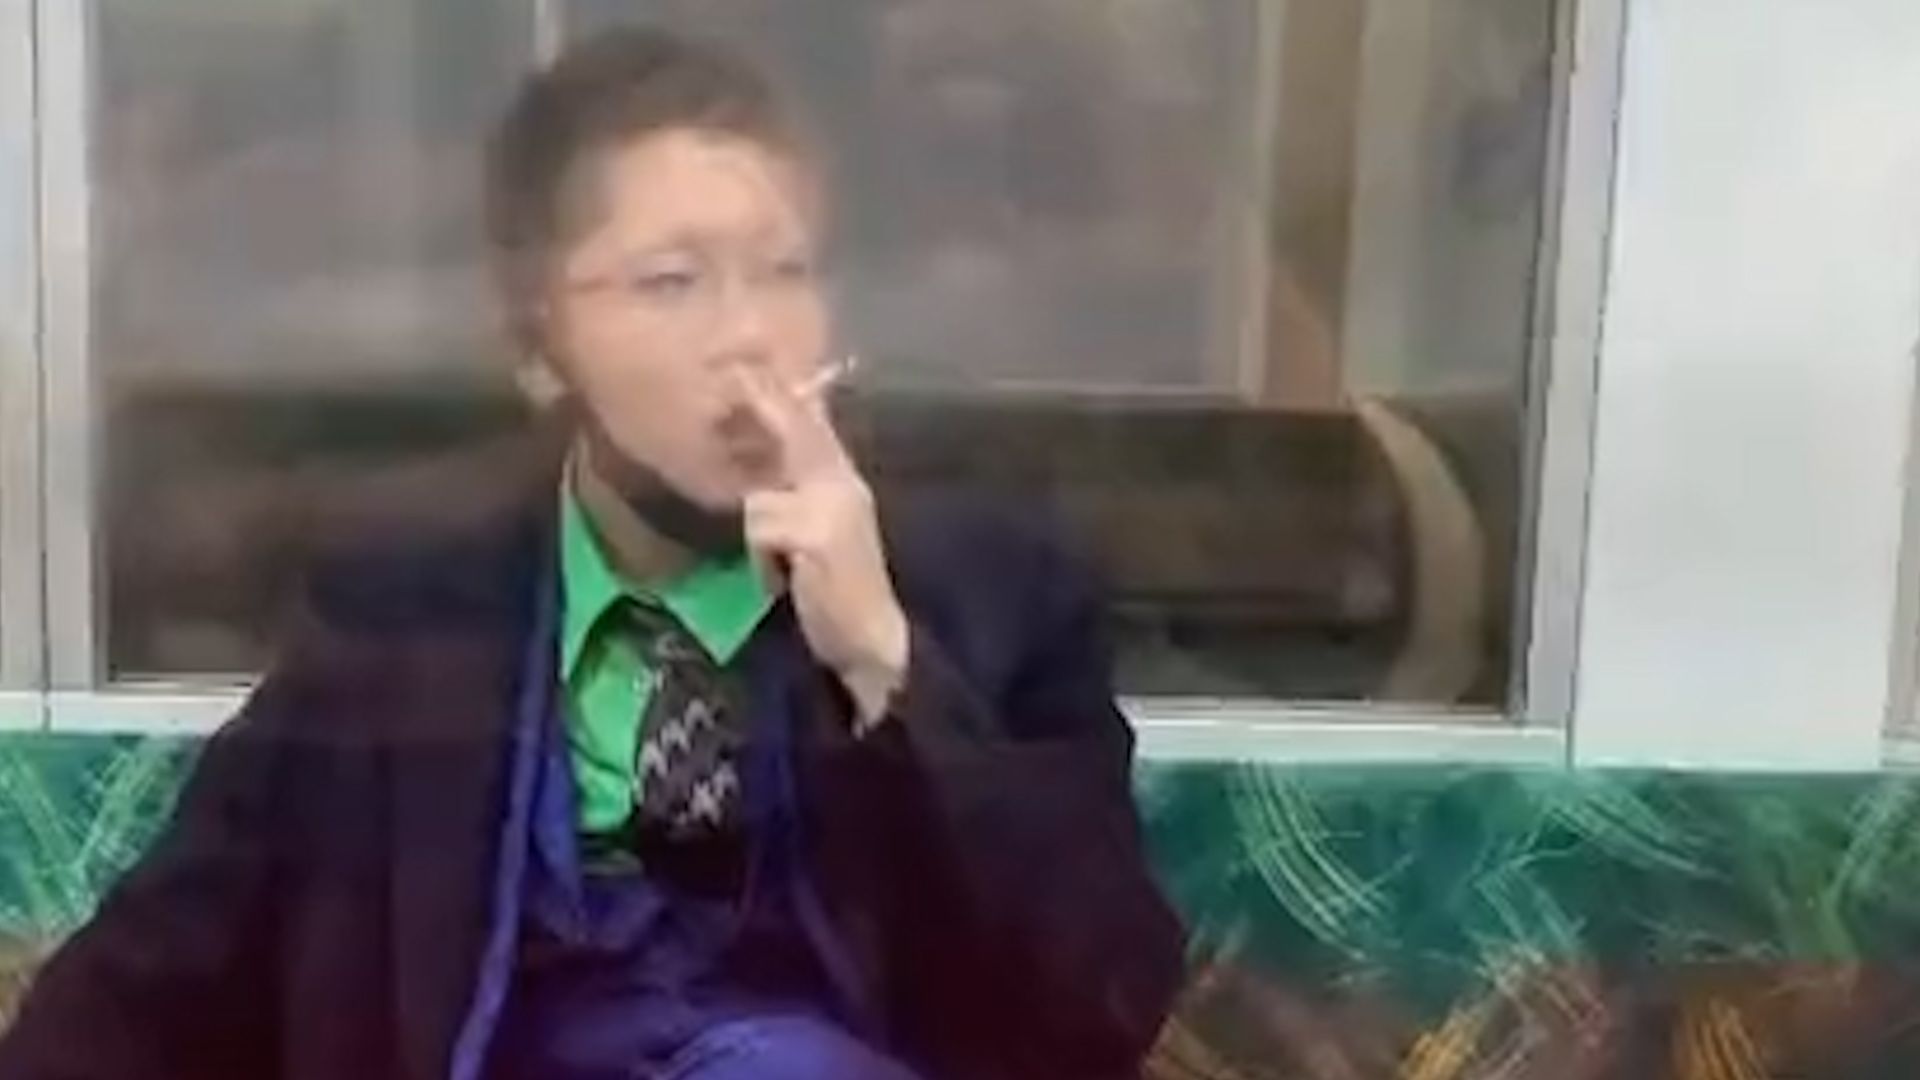 cebra protesta Corte El atacante vestido de Joker en el tren de Tokio aseguró que buscaba  asesinar a alguien para ser condenado a muerte - Infobae